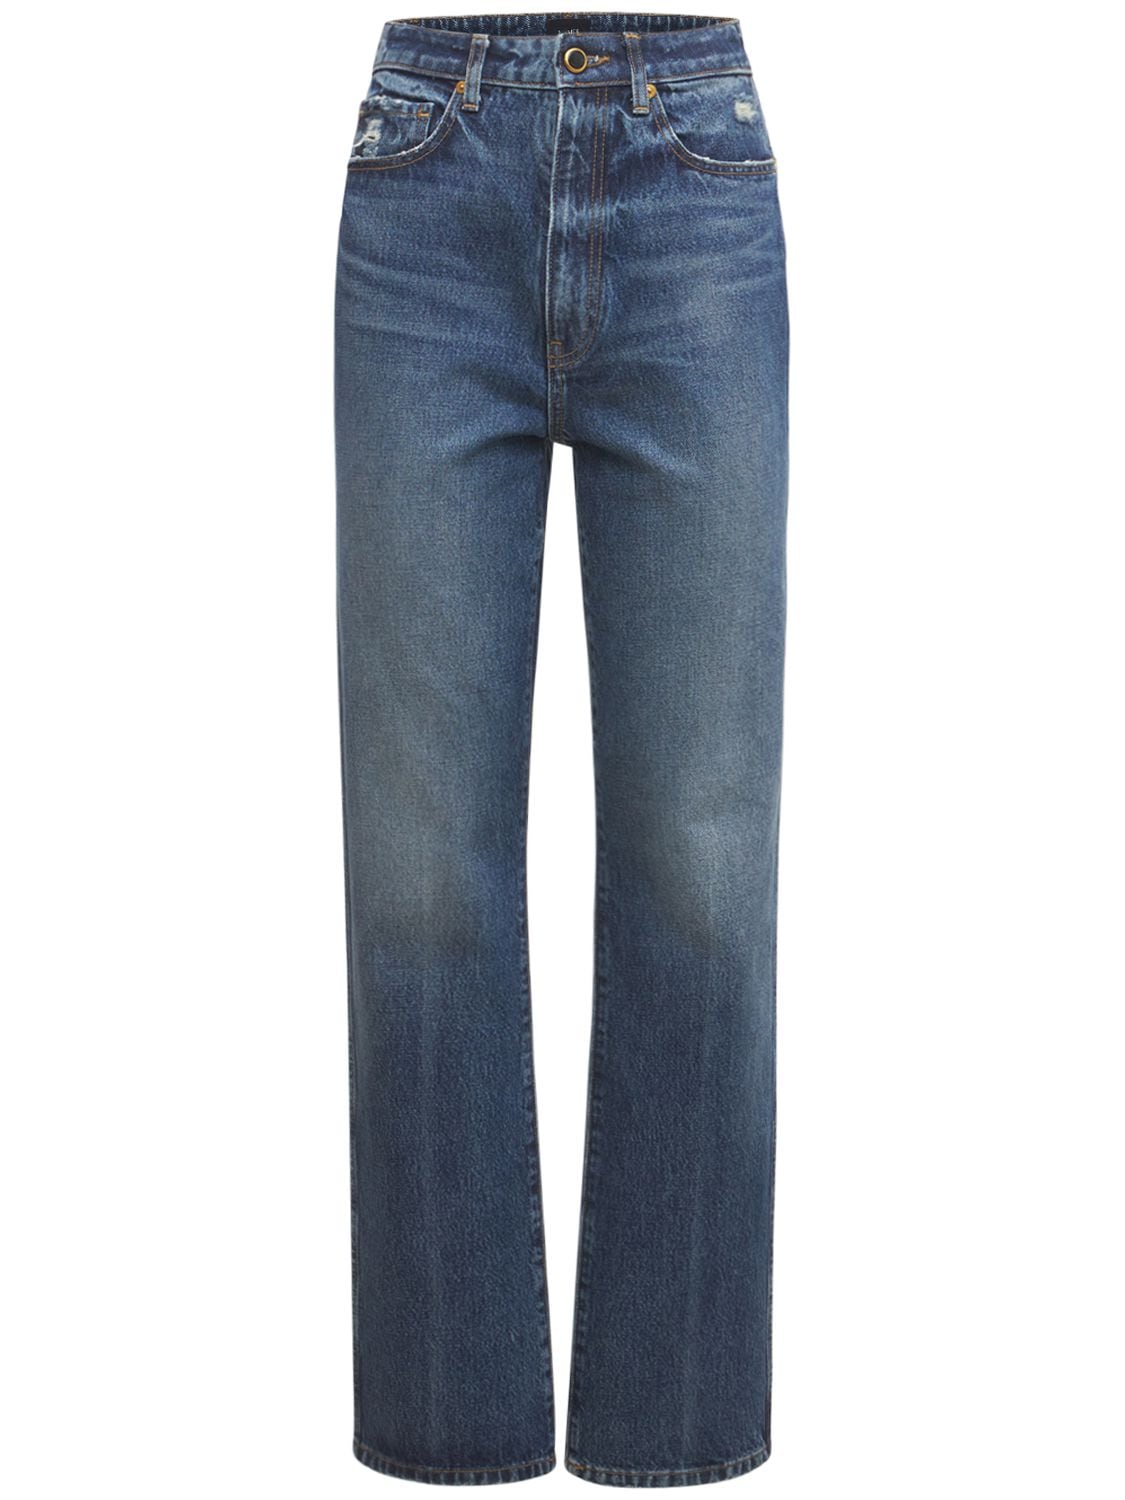 Khaite Vivian New Bootcut Flare Denim Jeans In Blue | ModeSens